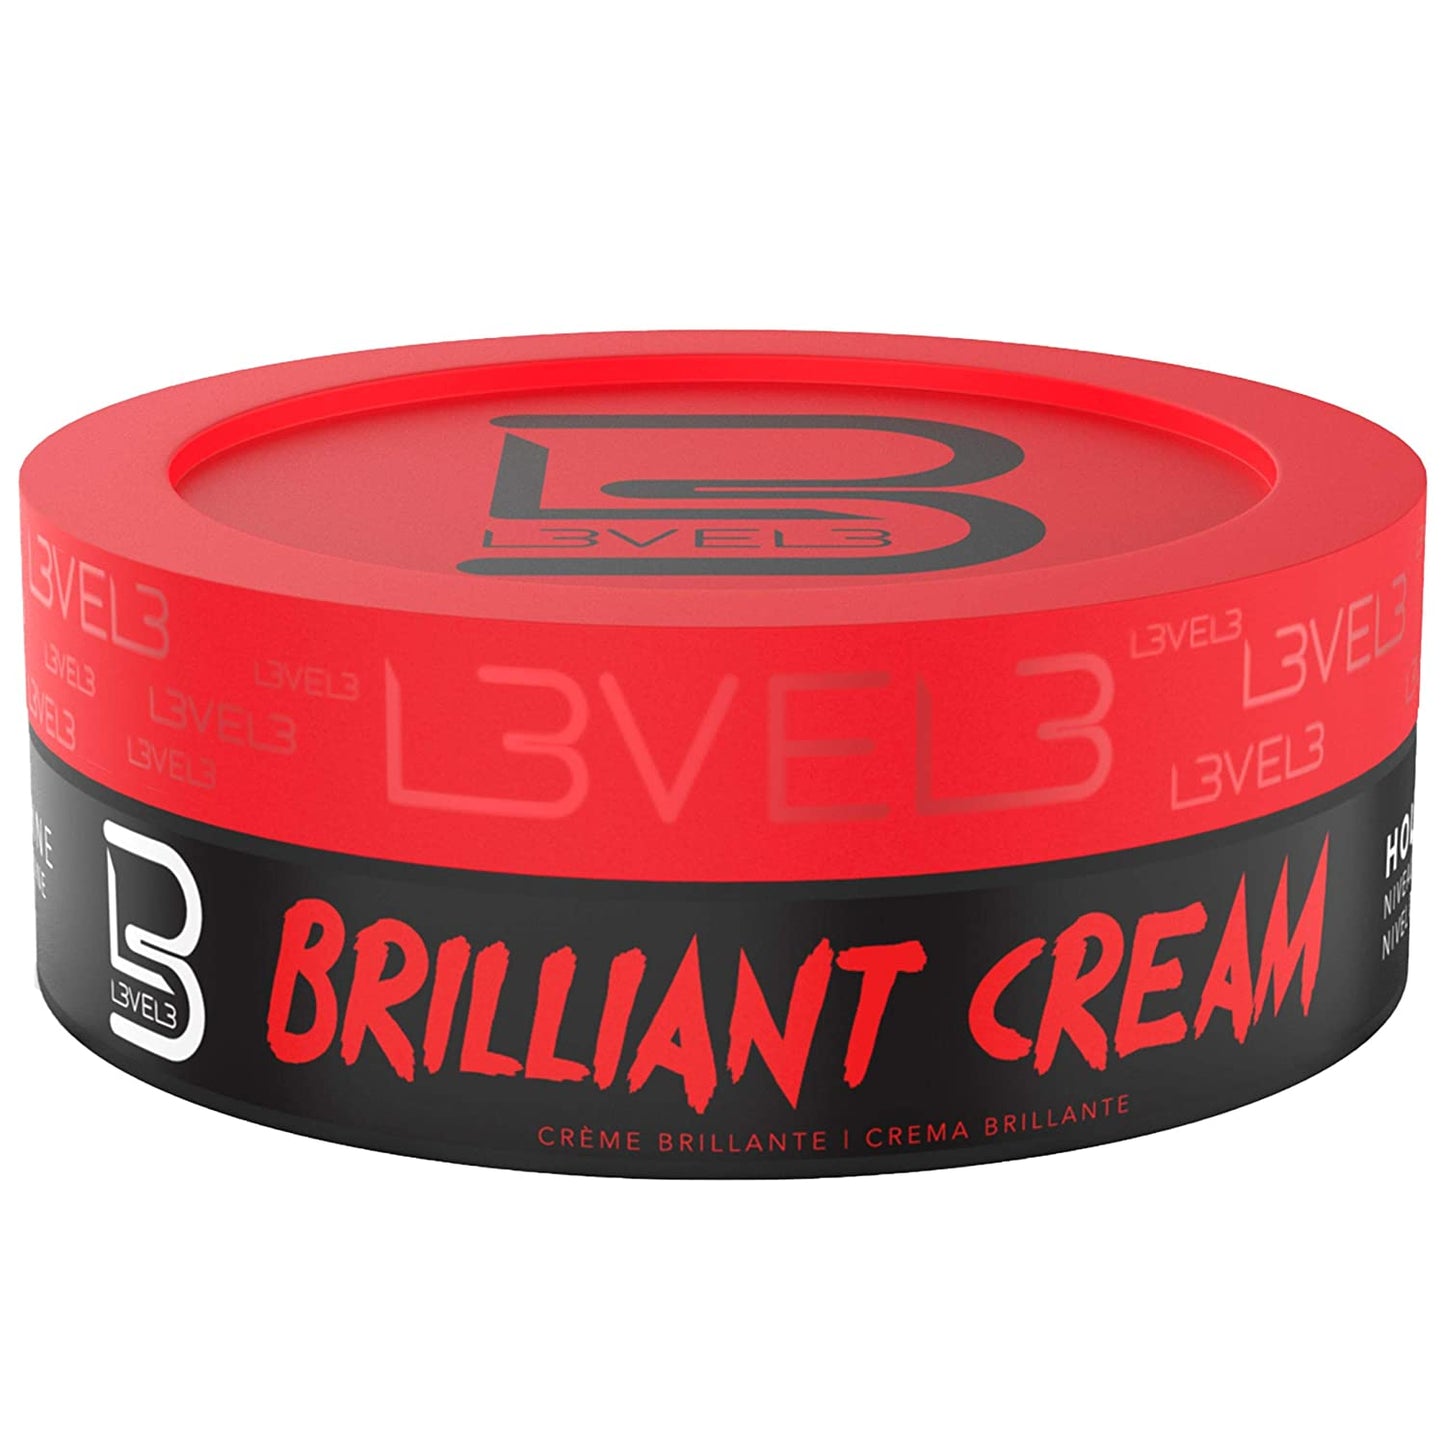 L3VEL 3 Brilliant Cream - 0.5oz.